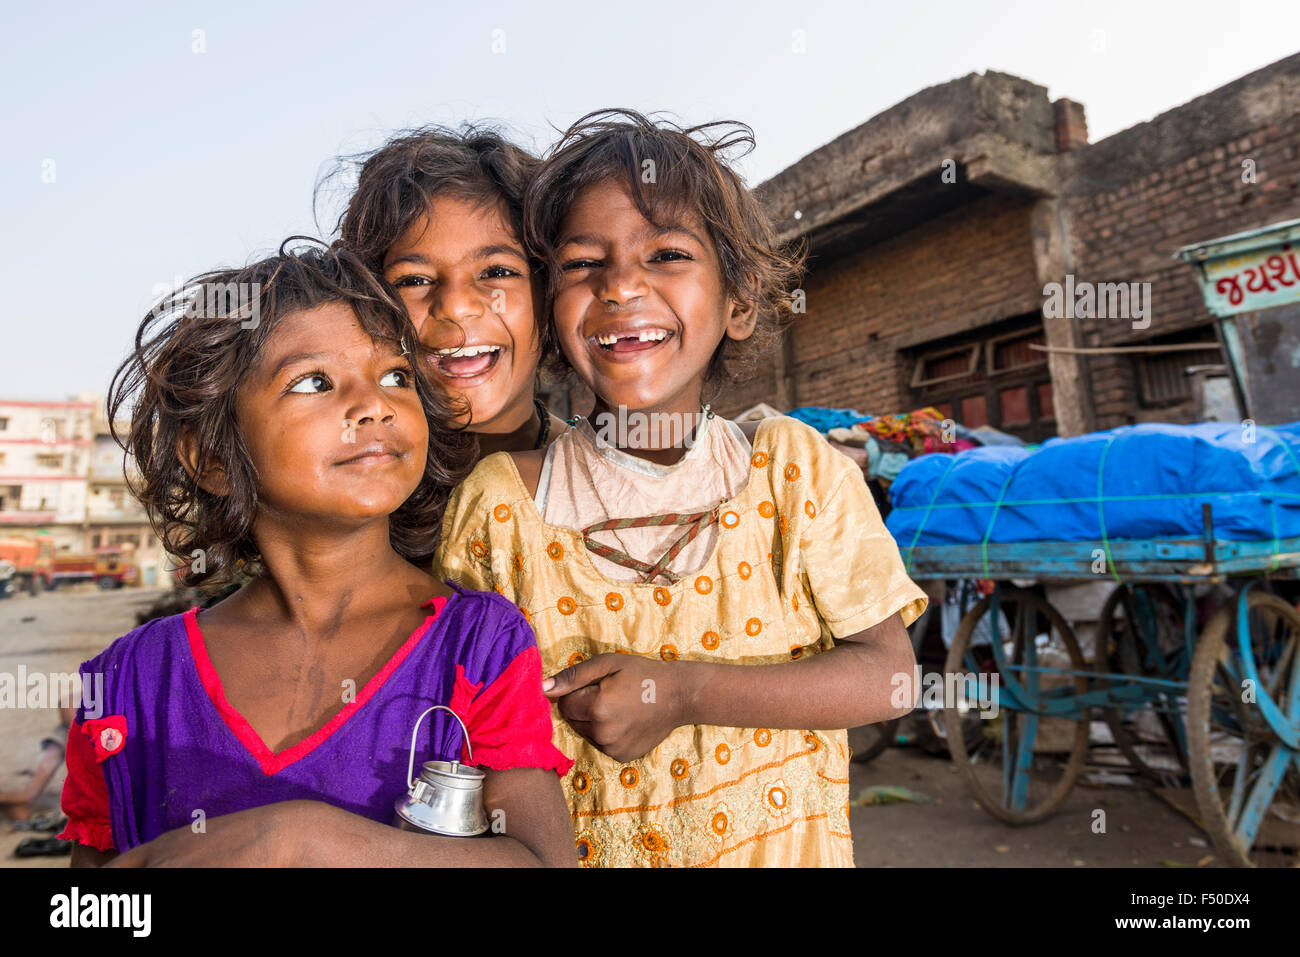 Portraits de trois smiling street kids, enfants, qui vivent juste à côté de routes très fréquentées sur la chaussée Banque D'Images